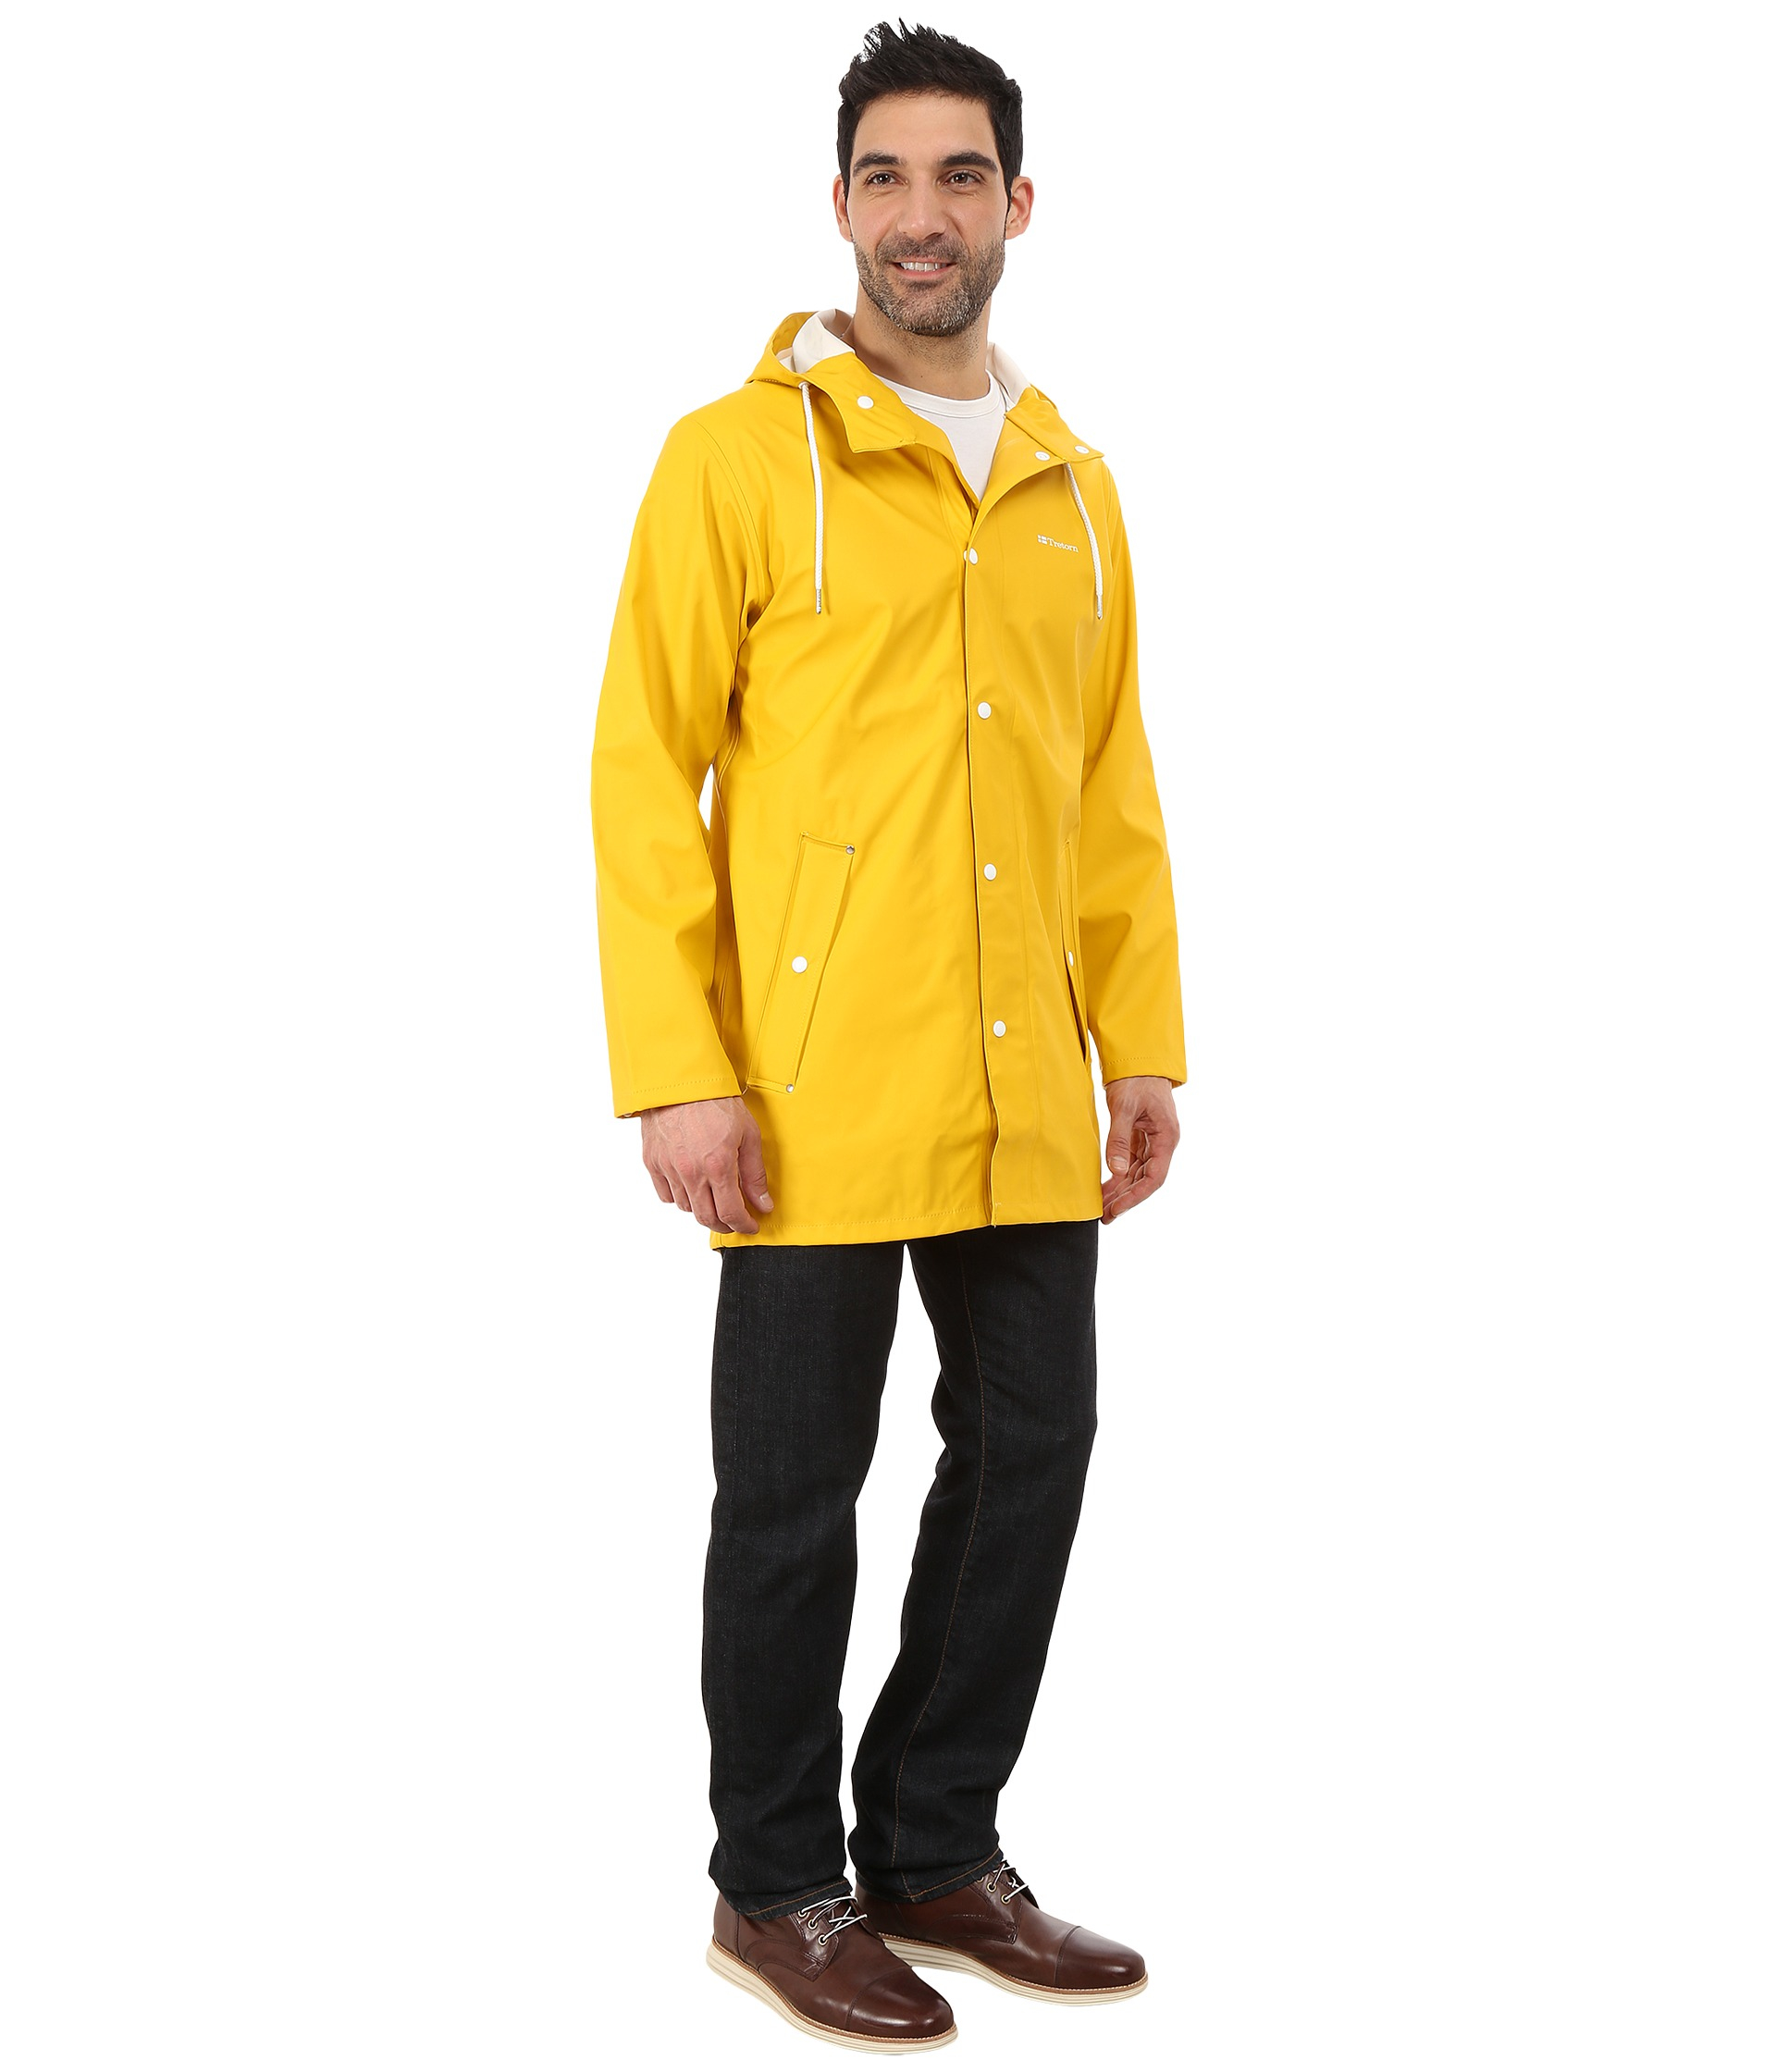 Tretorn Wings Rain Jacket in Yellow for Men - Lyst